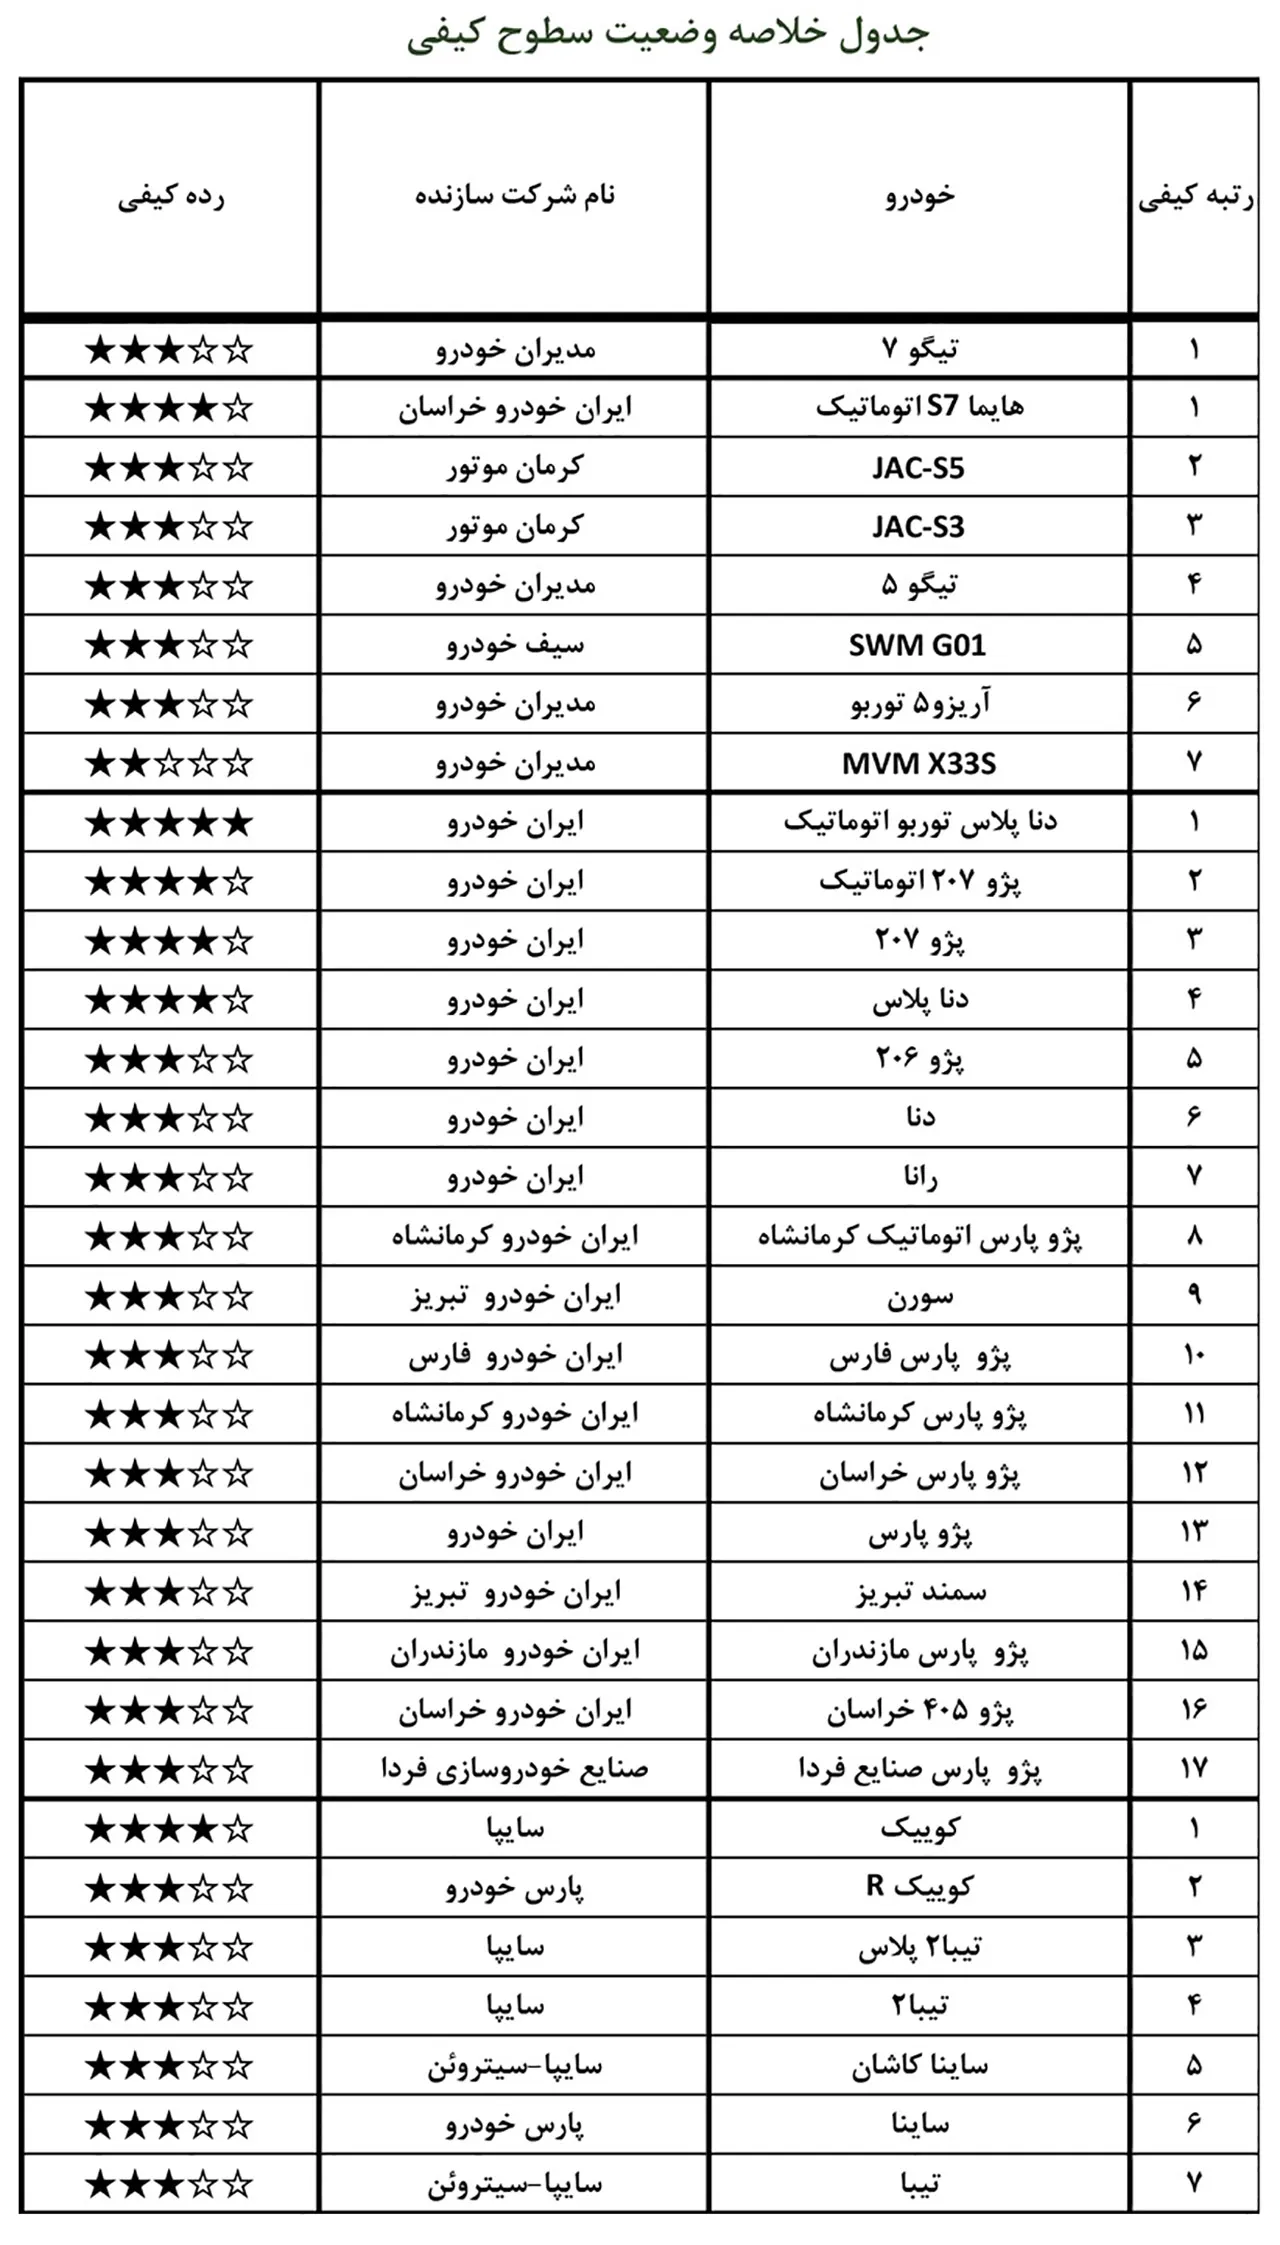 AutomobileFa report of local car quality Khordad1400